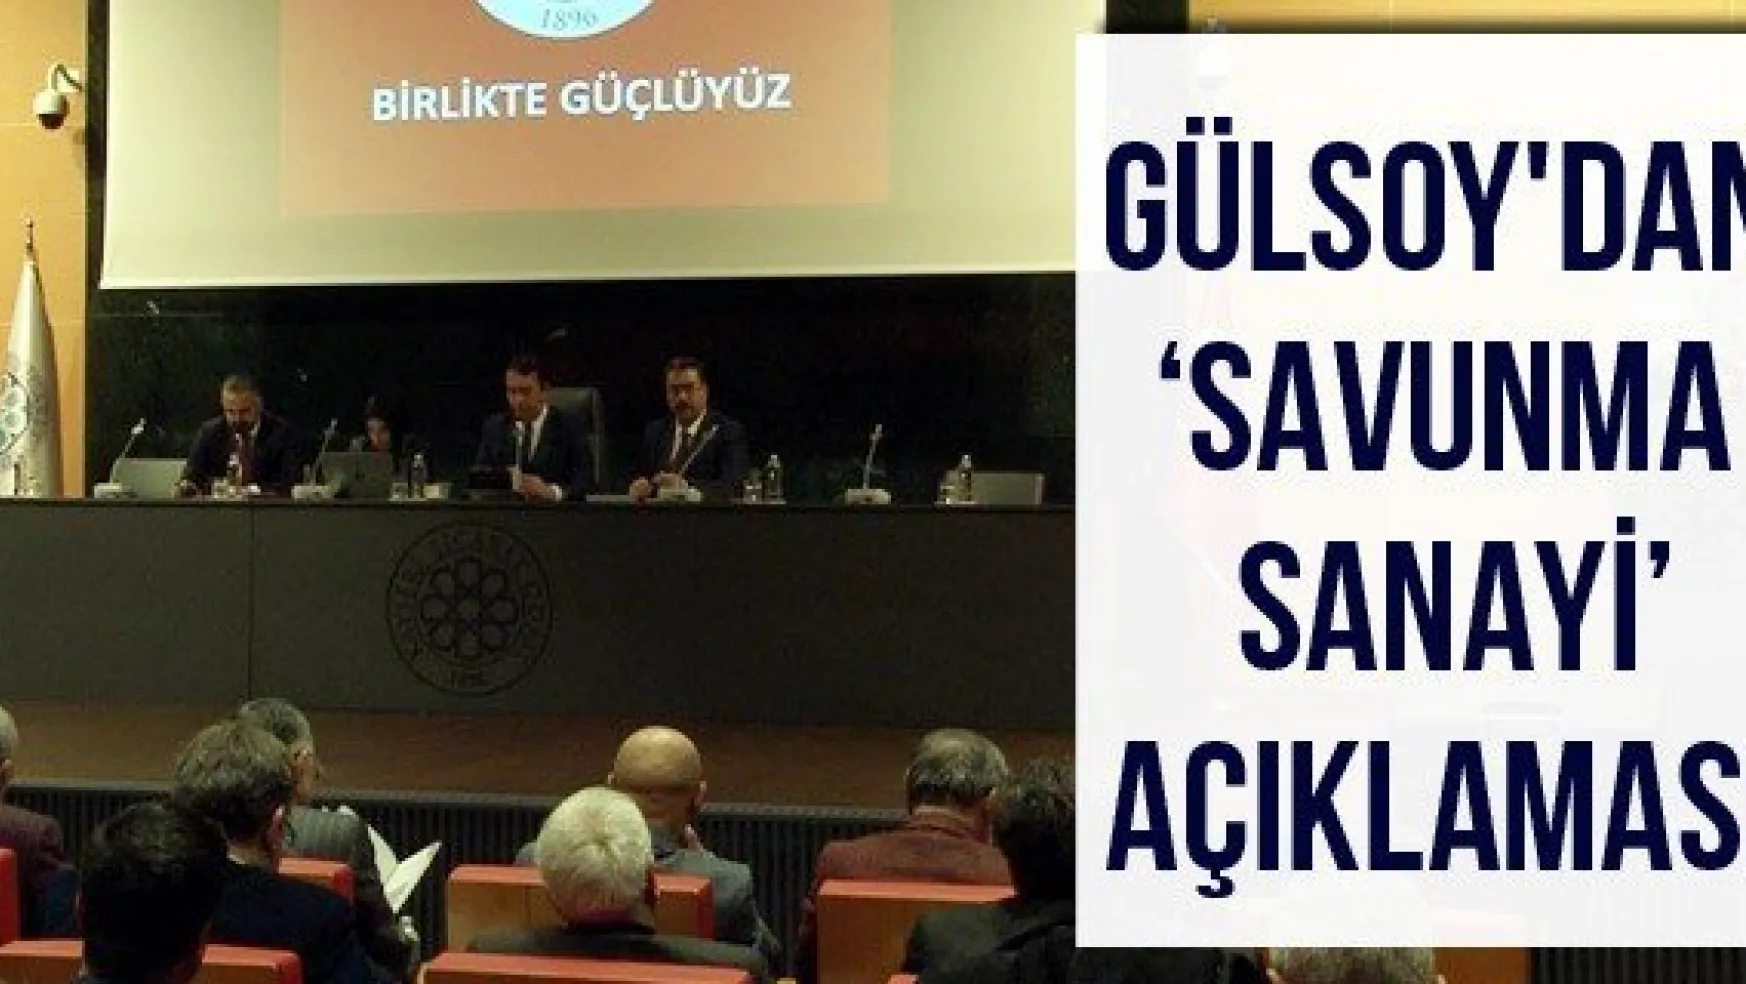 Gülsoy'dan 'Savunma sanayi' açıklaması